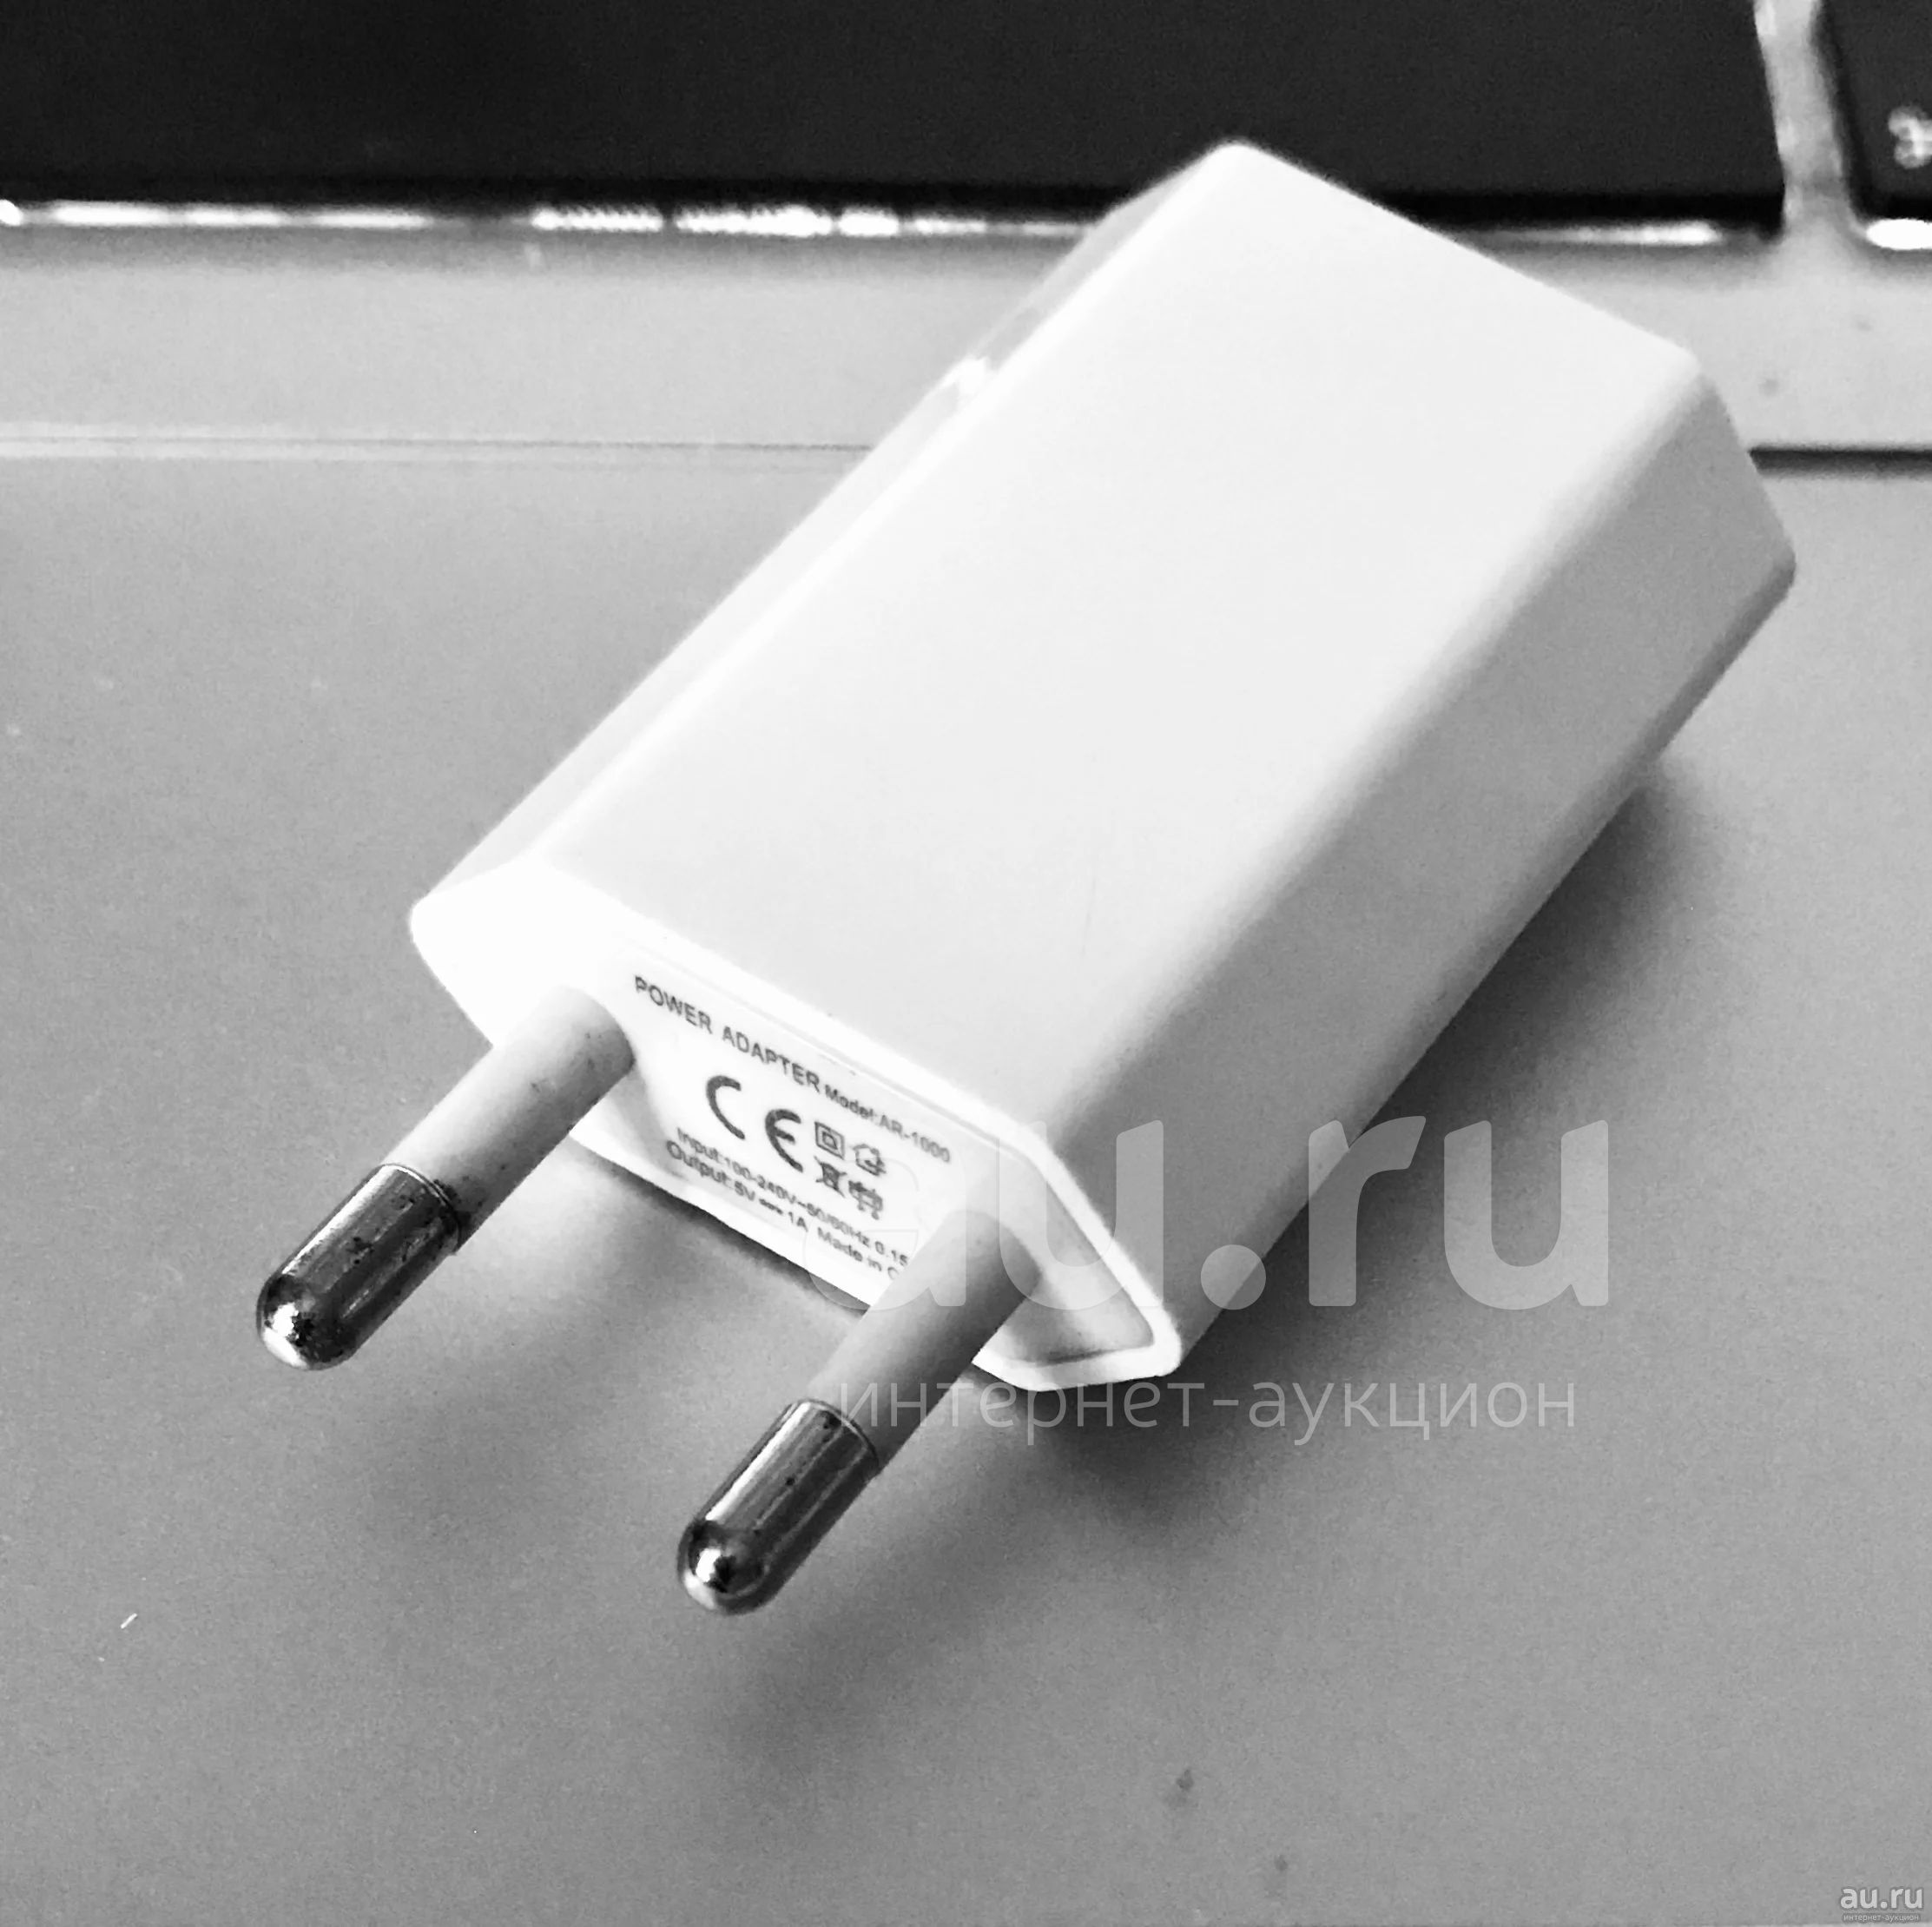 Адаптер сетевой USB / переходник / вилка / зарядка / —  в .